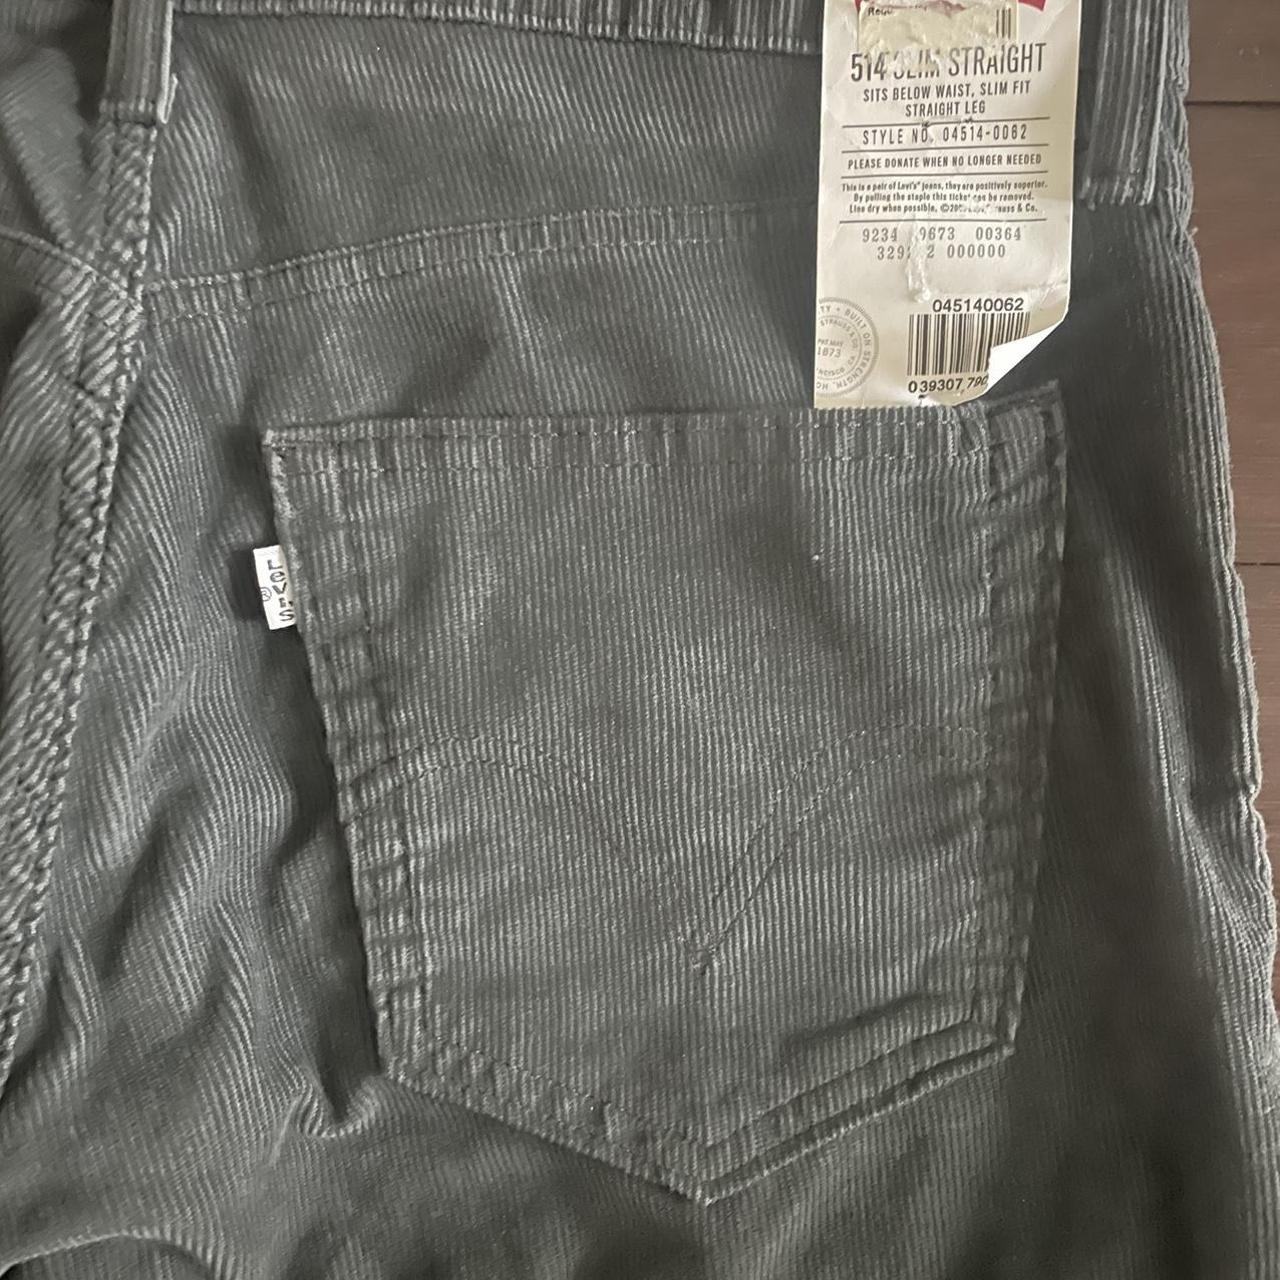 hard dark grey-ish black vintage corduroy pants 33... - Depop